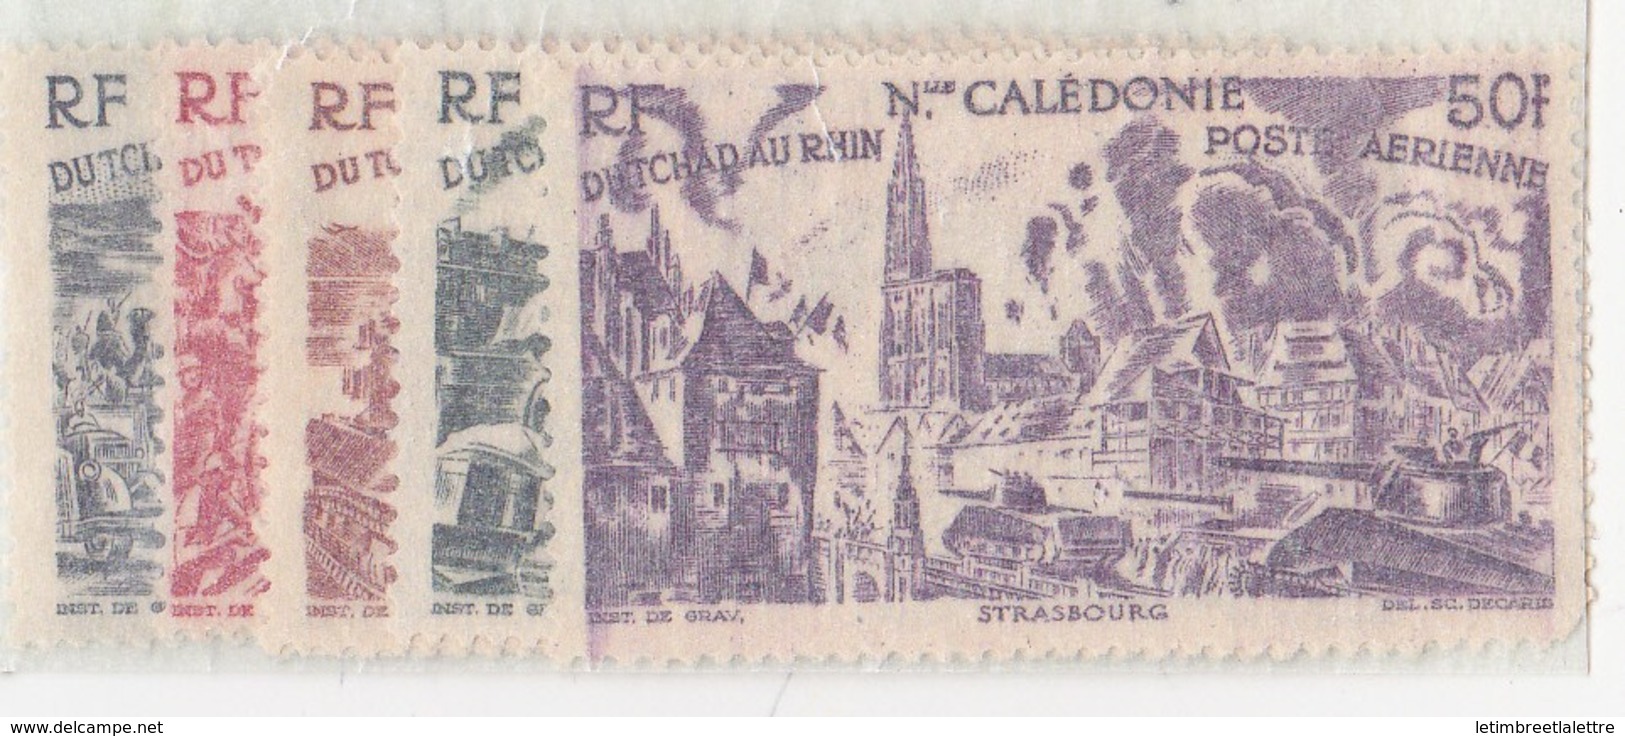 Nouvelle-Calédonie N° 55 à 60** P.A - Unused Stamps